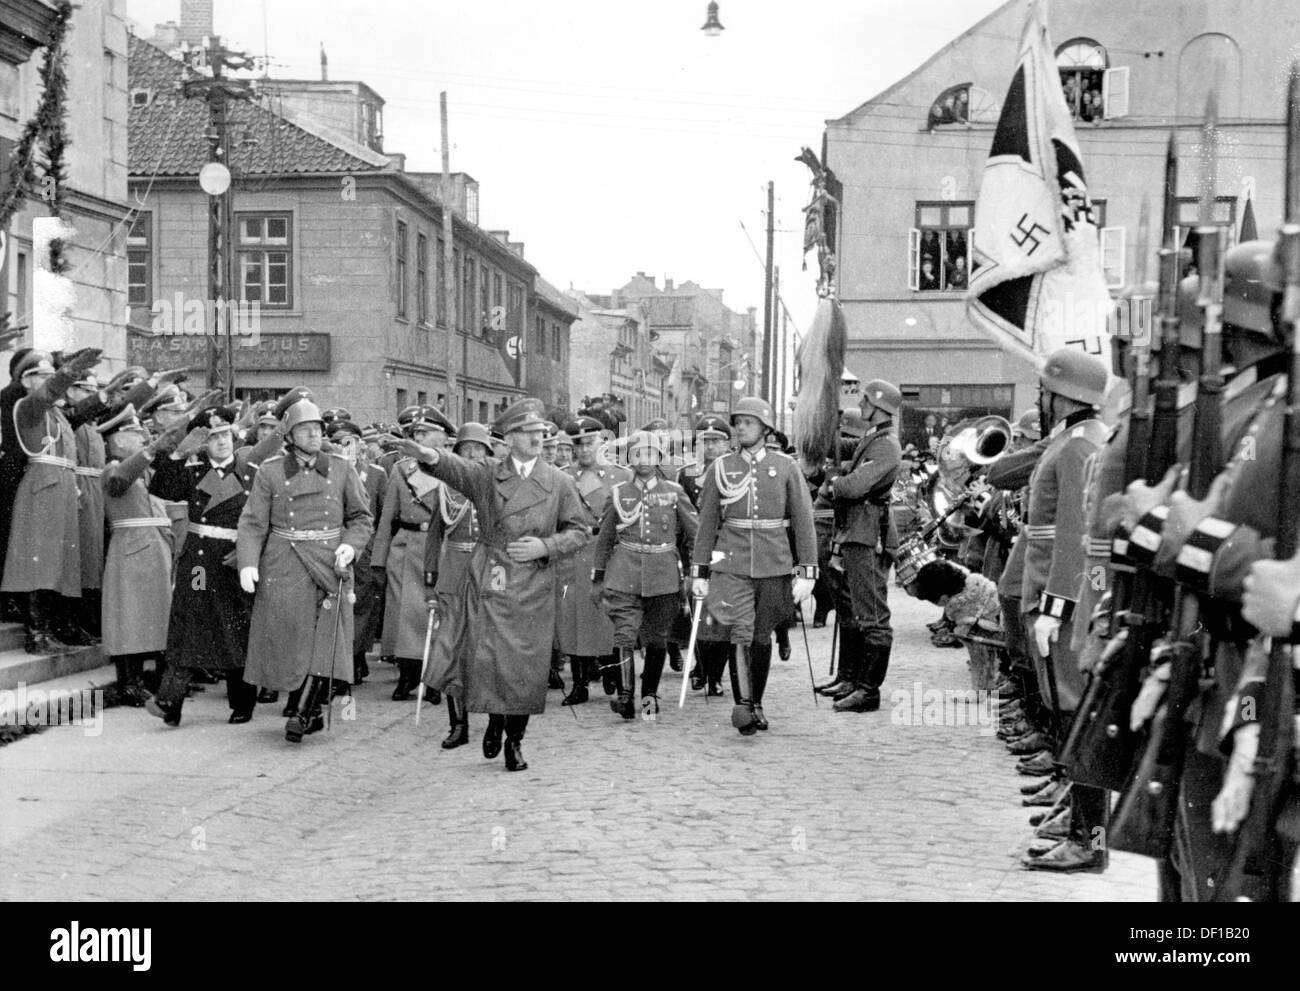 Le chancelier de Reich Adolf Hitler passe devant une compagnie honoraire à Memel (aujourd'hui: Klaipeda/Lituanie) à l'occasion de la remise du pays Memel par le gouvernement lituanien, le 23 mars 1939. À gauche dans l'uniforme noir, l'amiral Erich Raeder. Fotoarchiv für Zeitgeschichte Banque D'Images